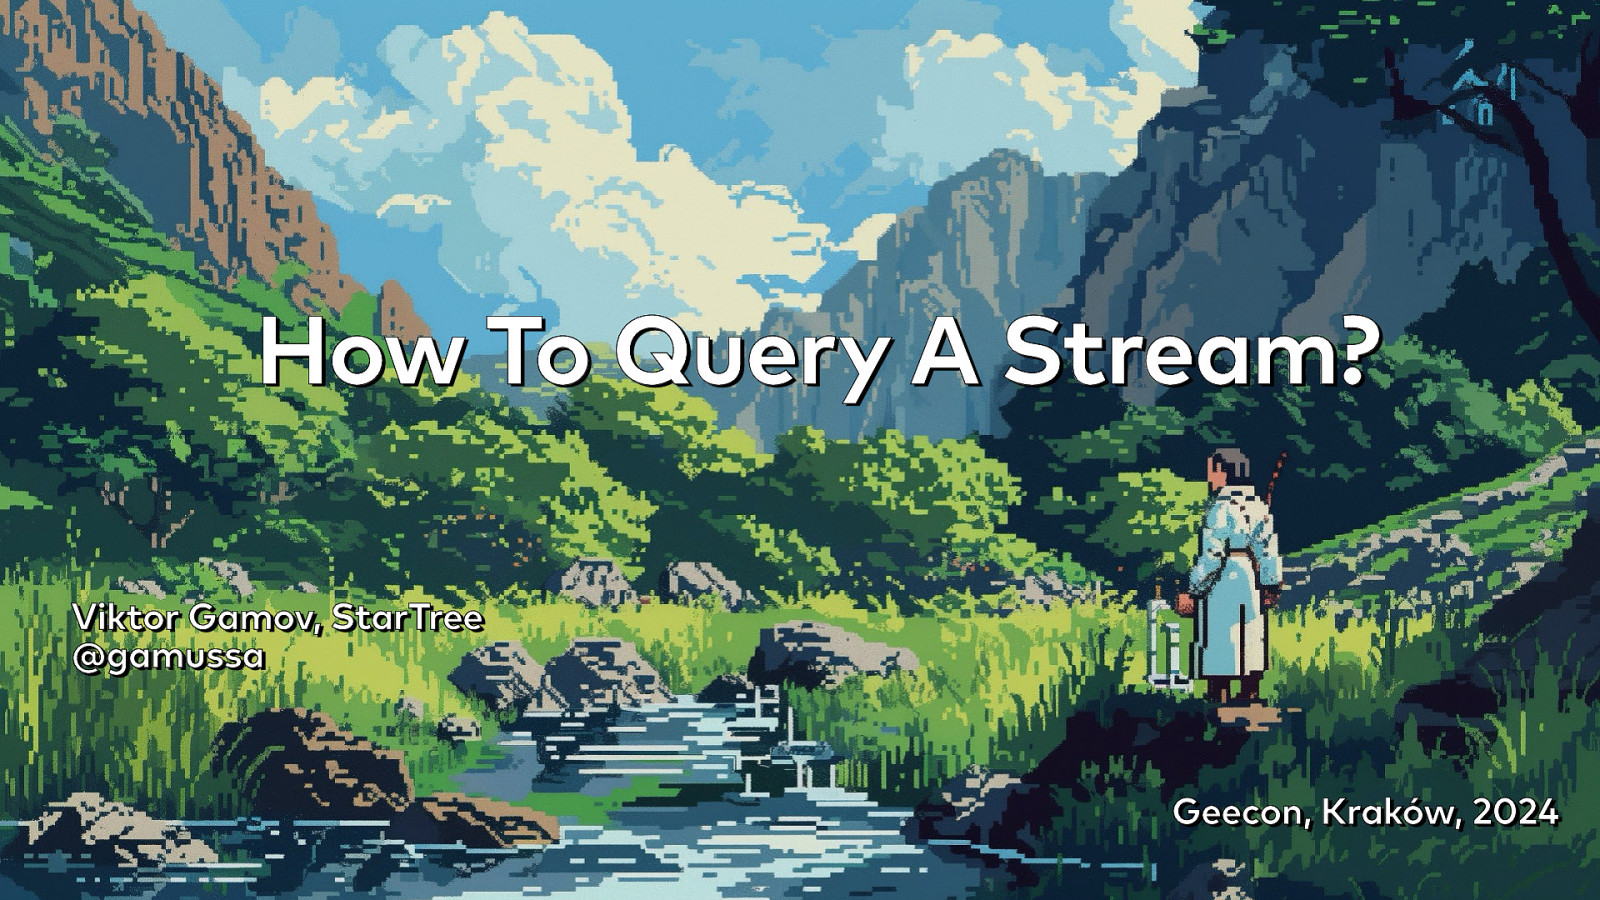 How Do You Query a Stream?